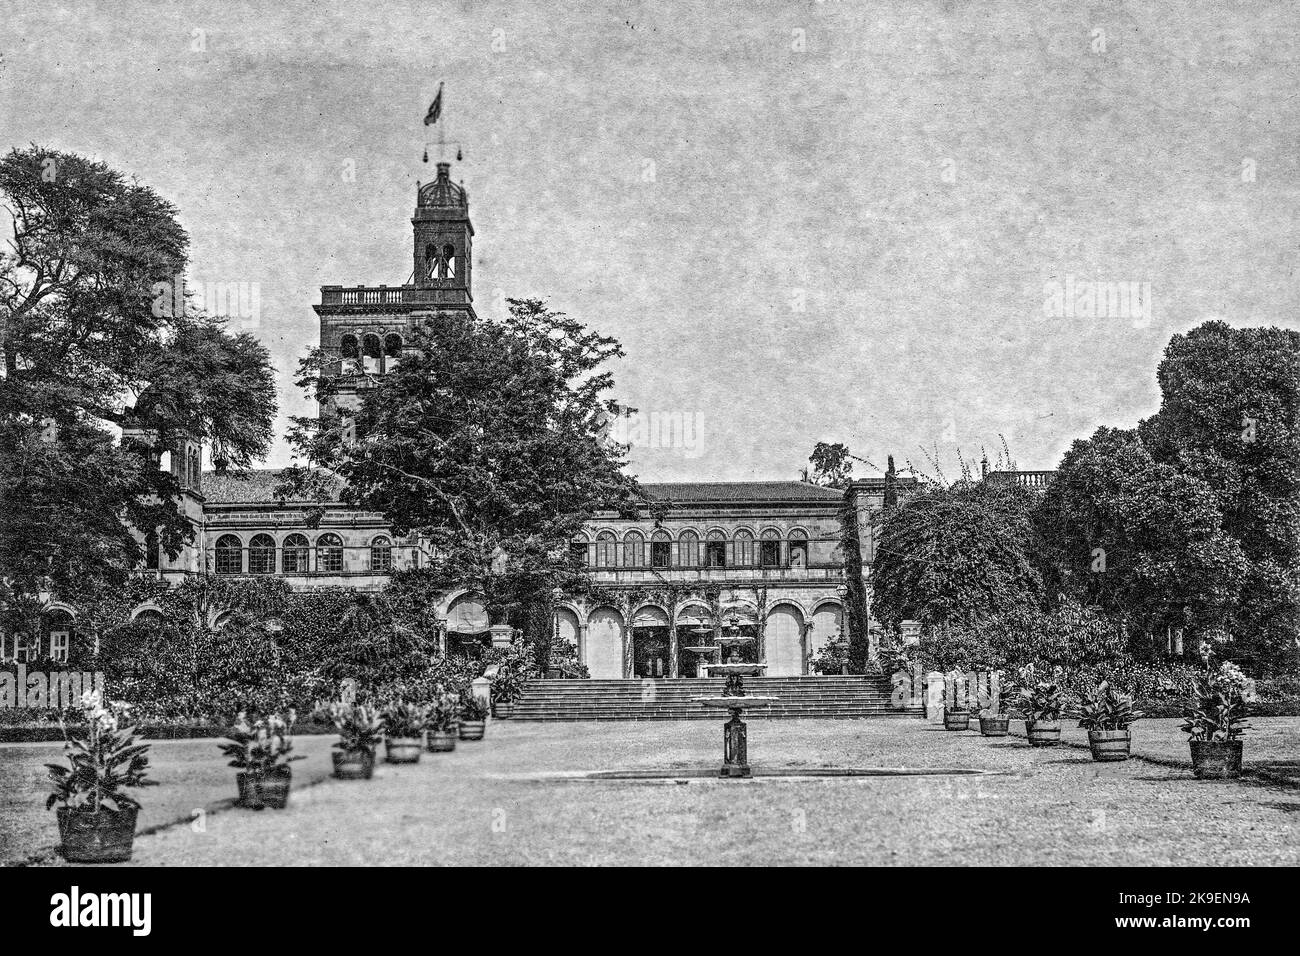 Old Black and White Photo of Council Hall now Savitribai Phule Pune University, Pune, Maharashtra India. Stock Photo